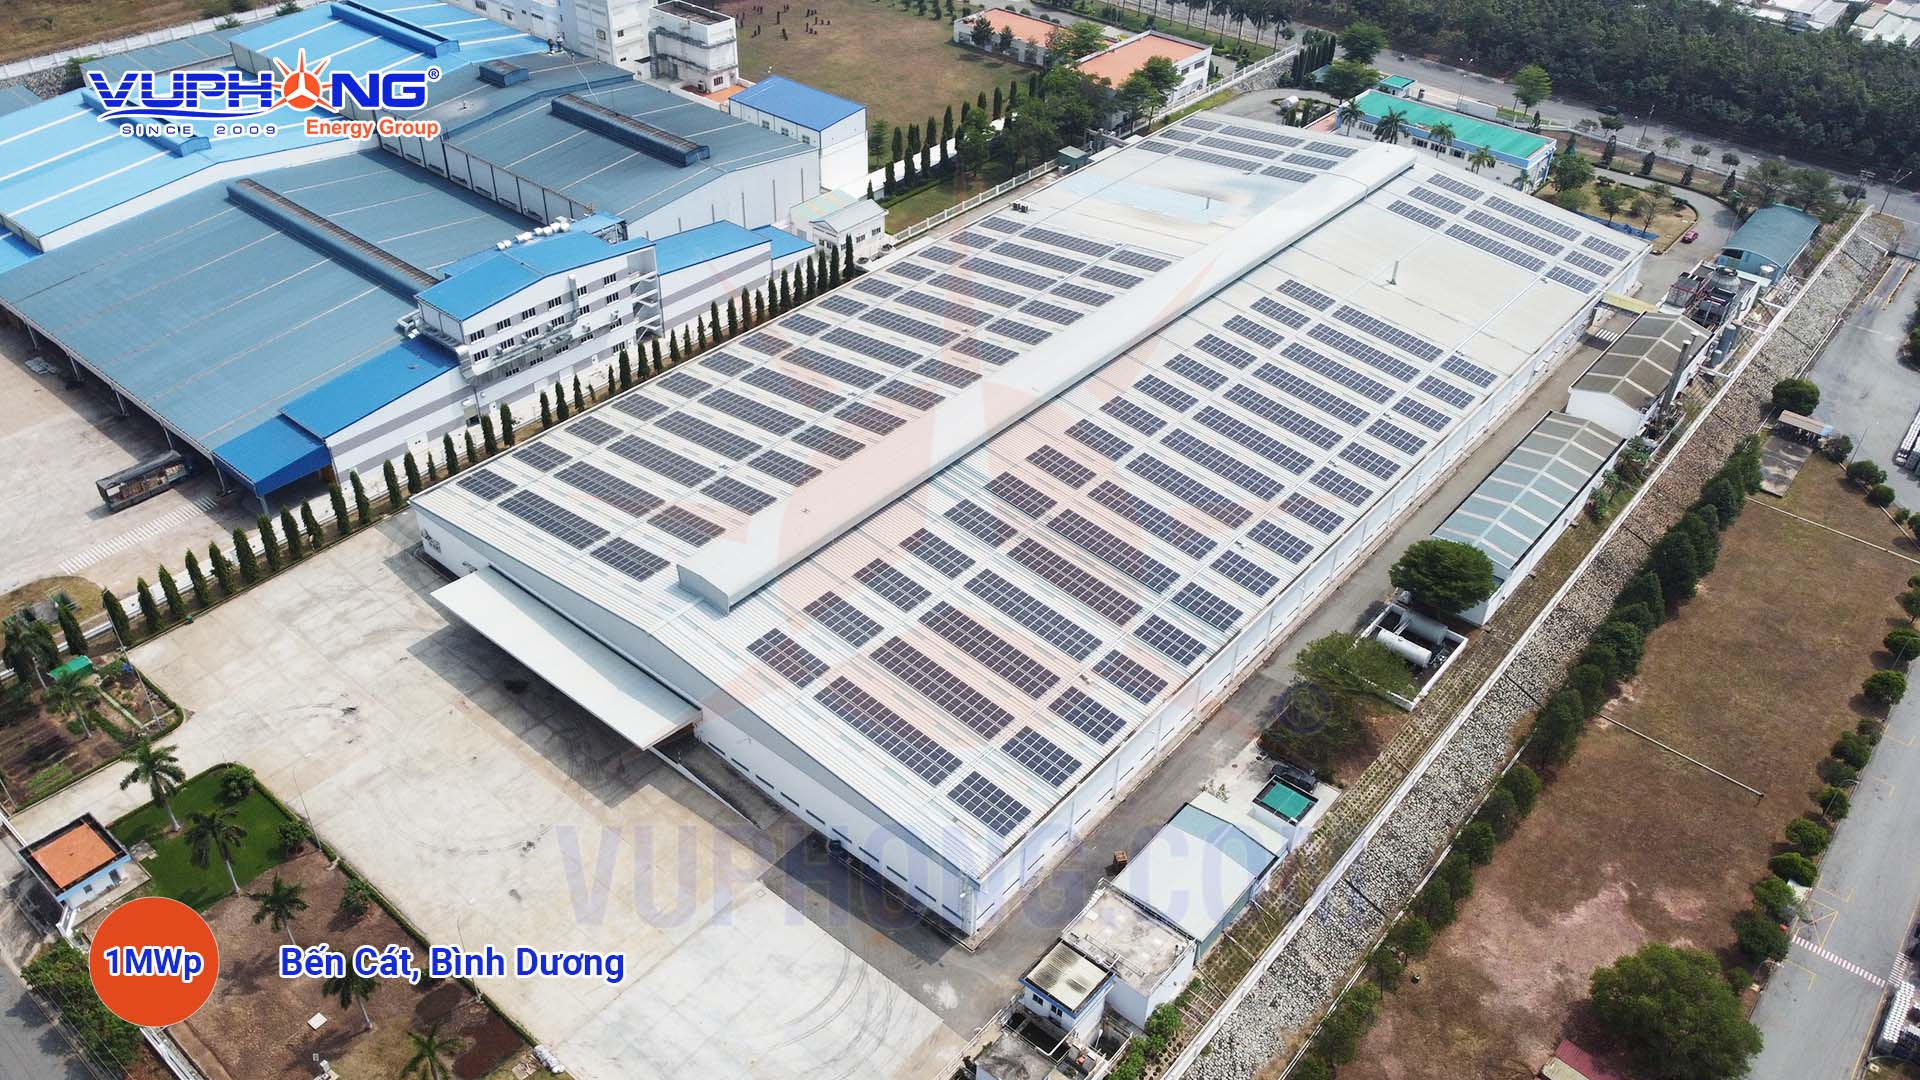 Hệ thống điện mặt trời hòa lưới 1 MWp Nhơn Trạch Đồng Nai - Công Ty Cổ Phần Vũ Phong Energy Group